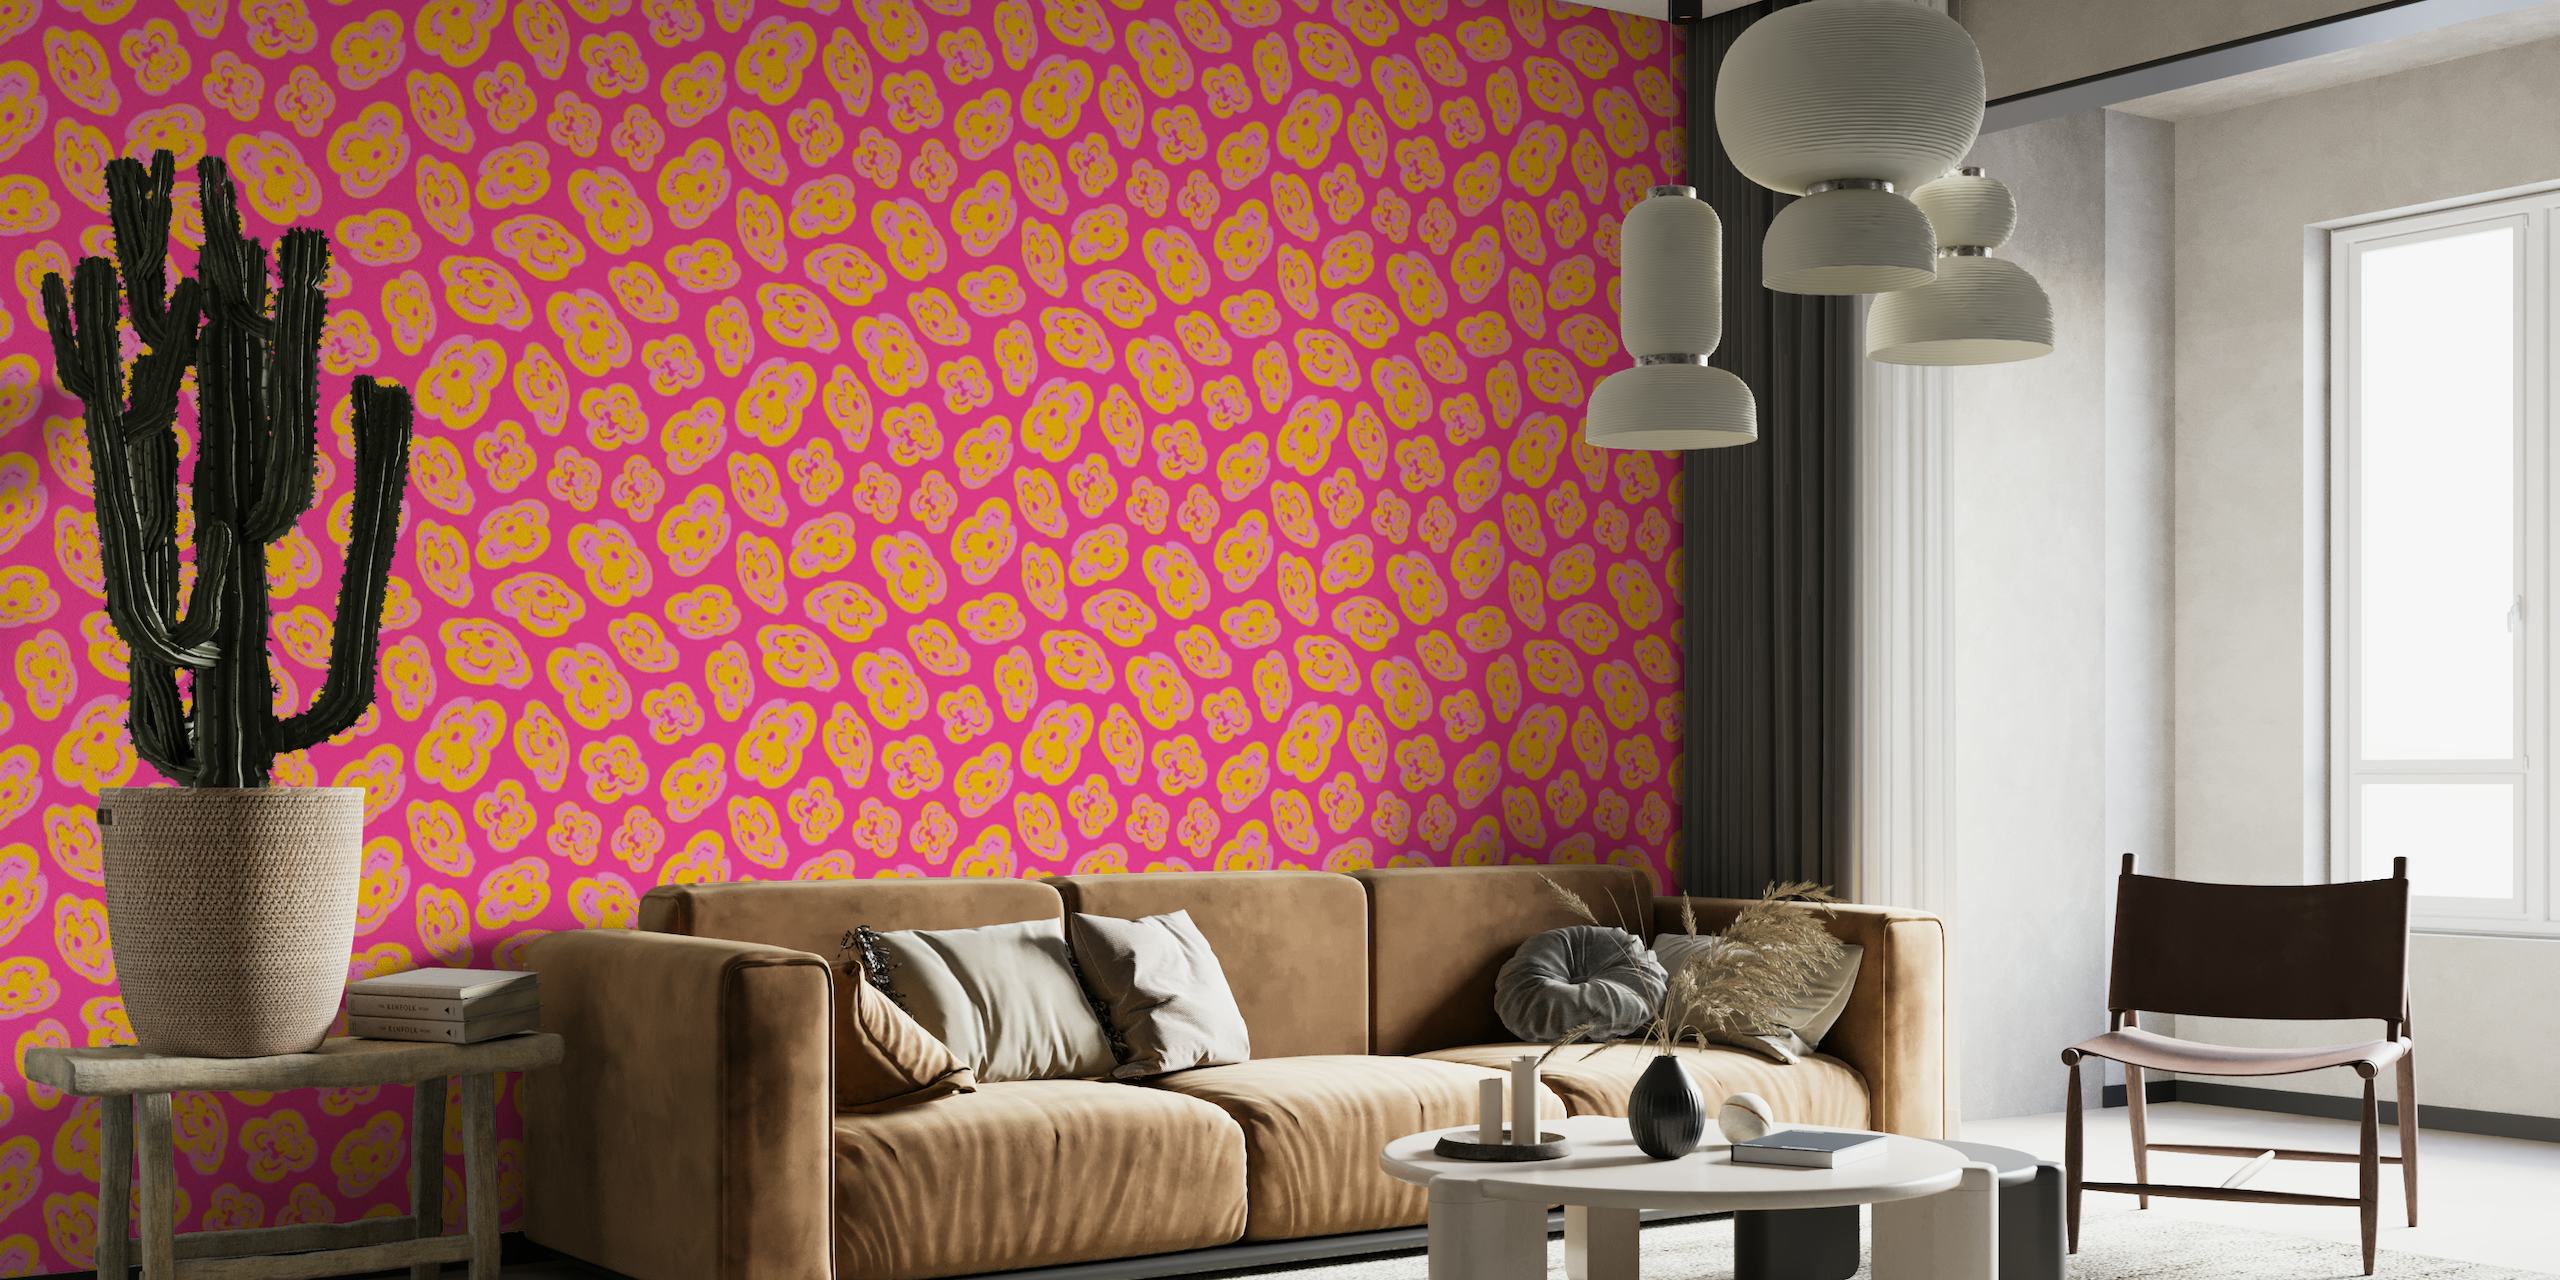 Abstracte zwevende leliepatronen in de kleuren geel en roze op een fuchsiakleurige muurschildering als achtergrond